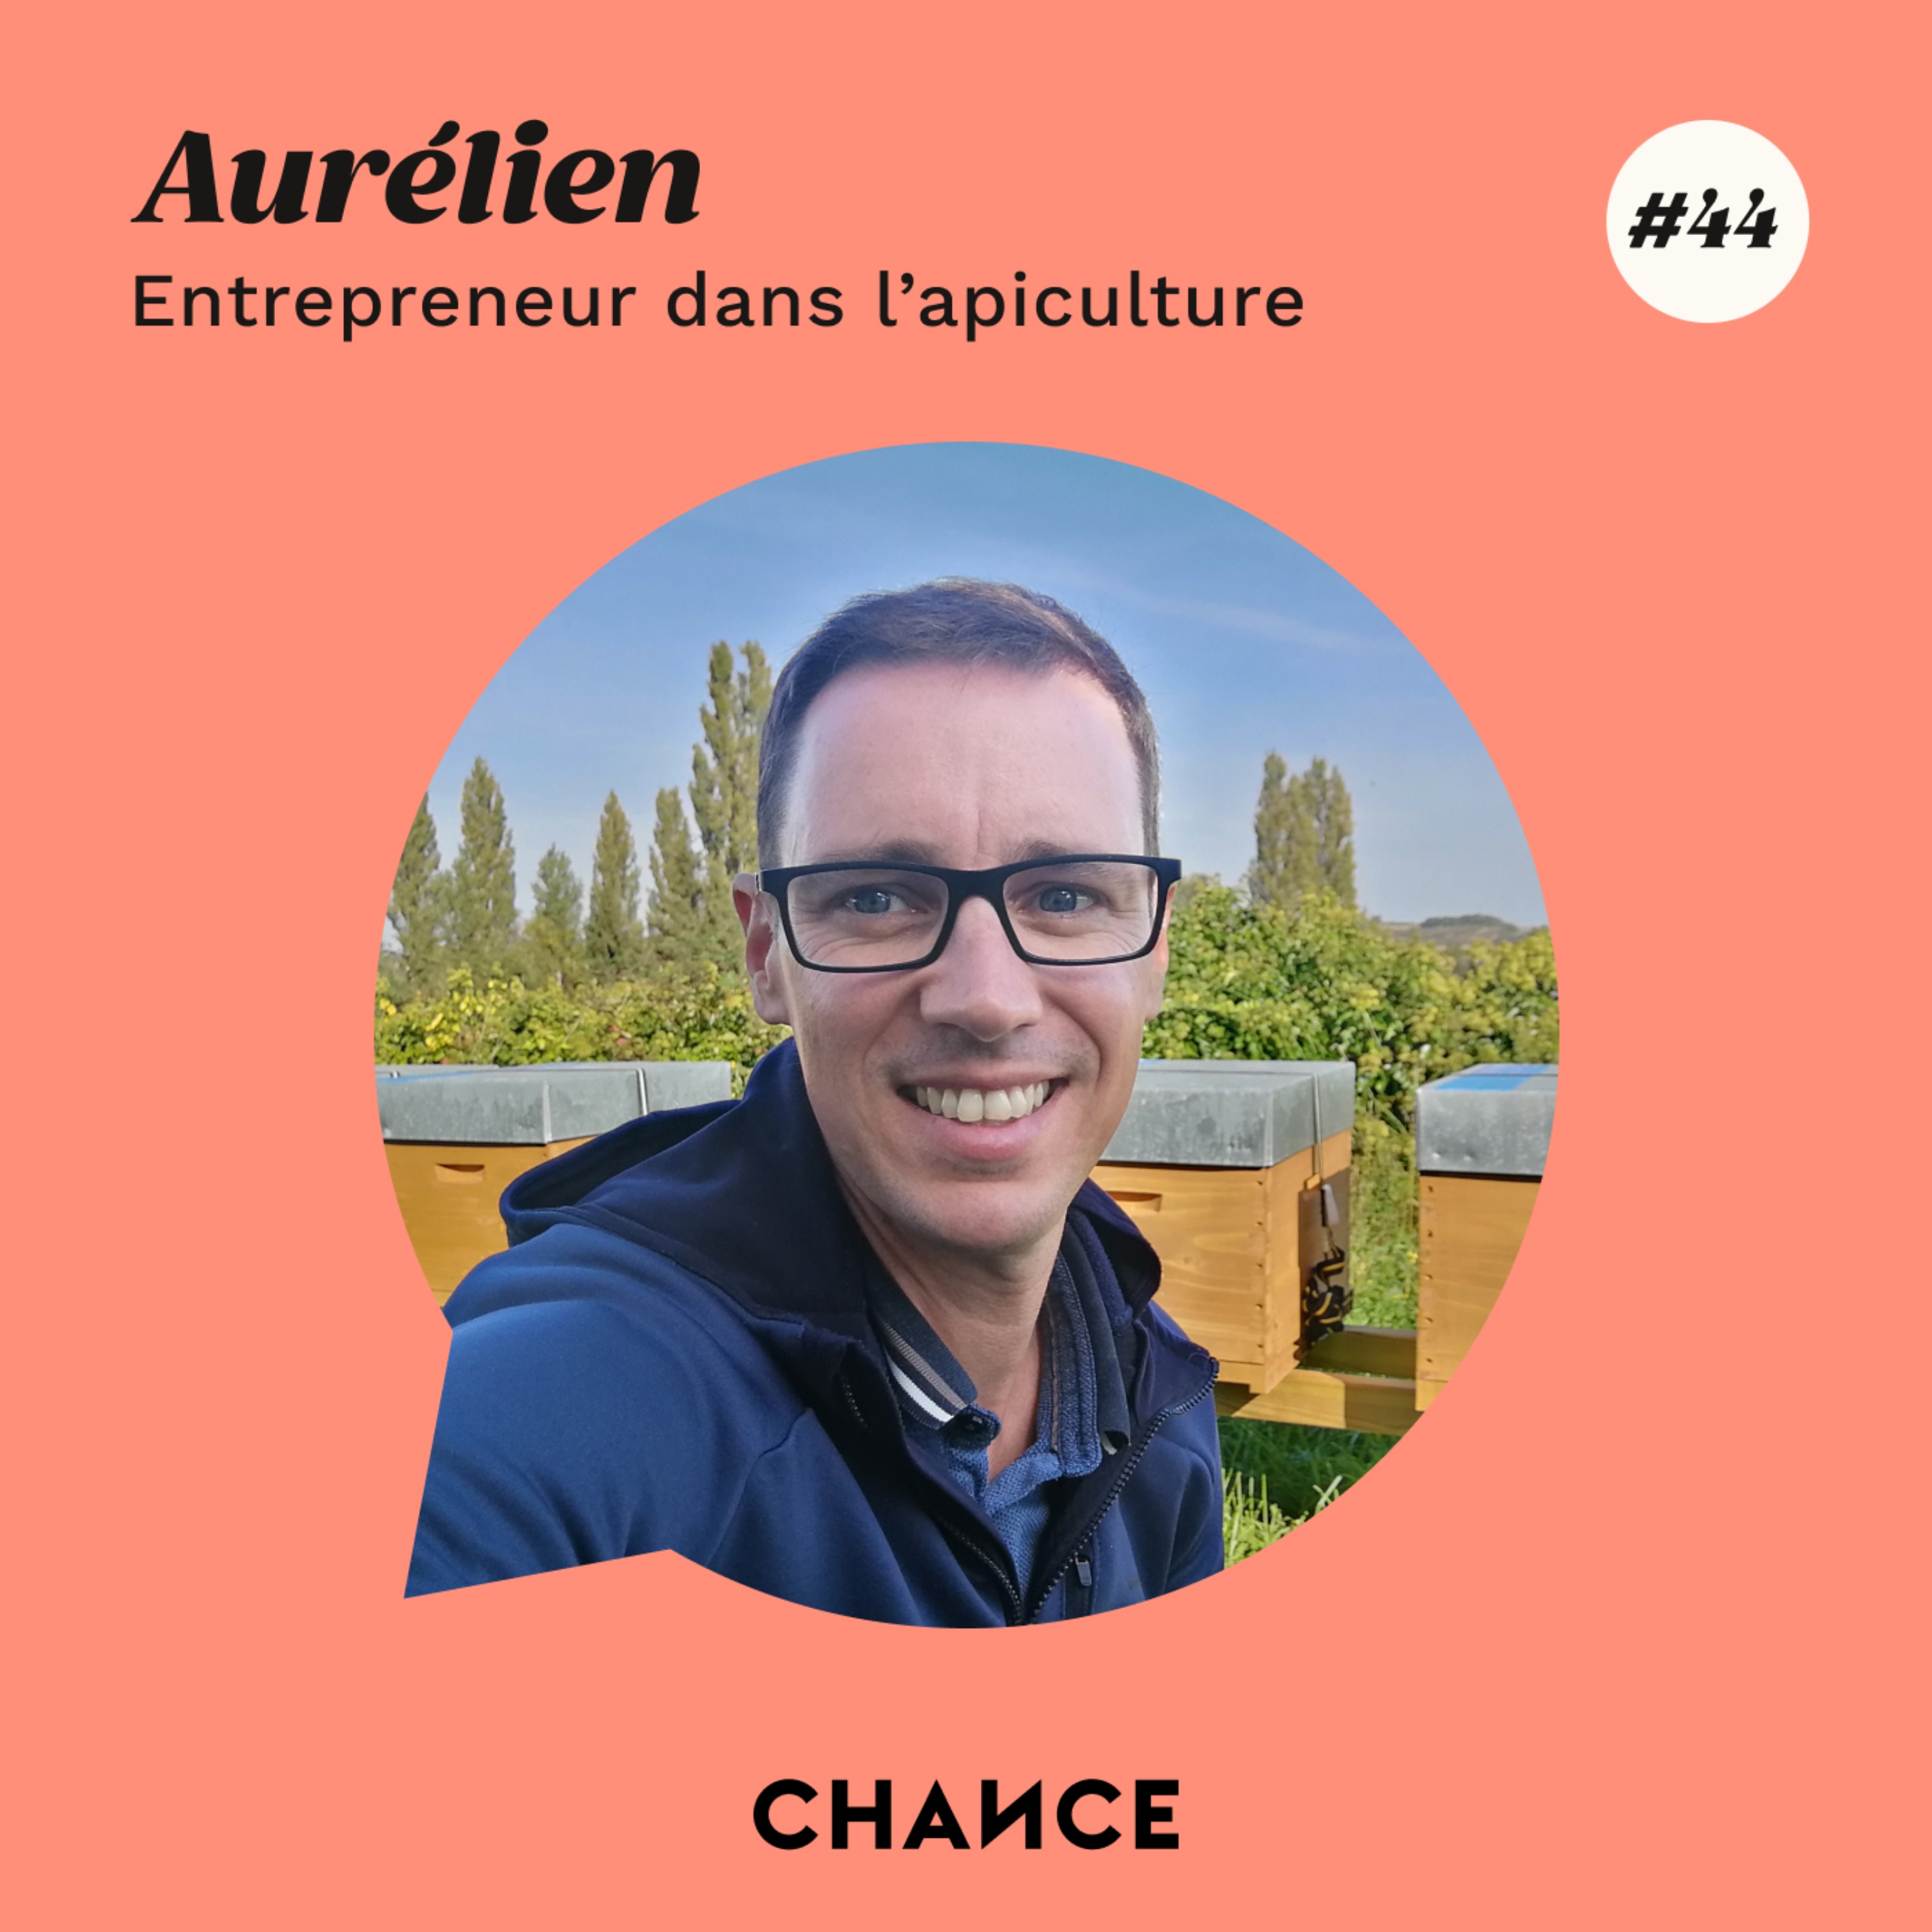 #44 - Aurélien, entrepreneur dans l’apiculture : ”Laissez la passion qui est en vous émerger et vivez-la”.